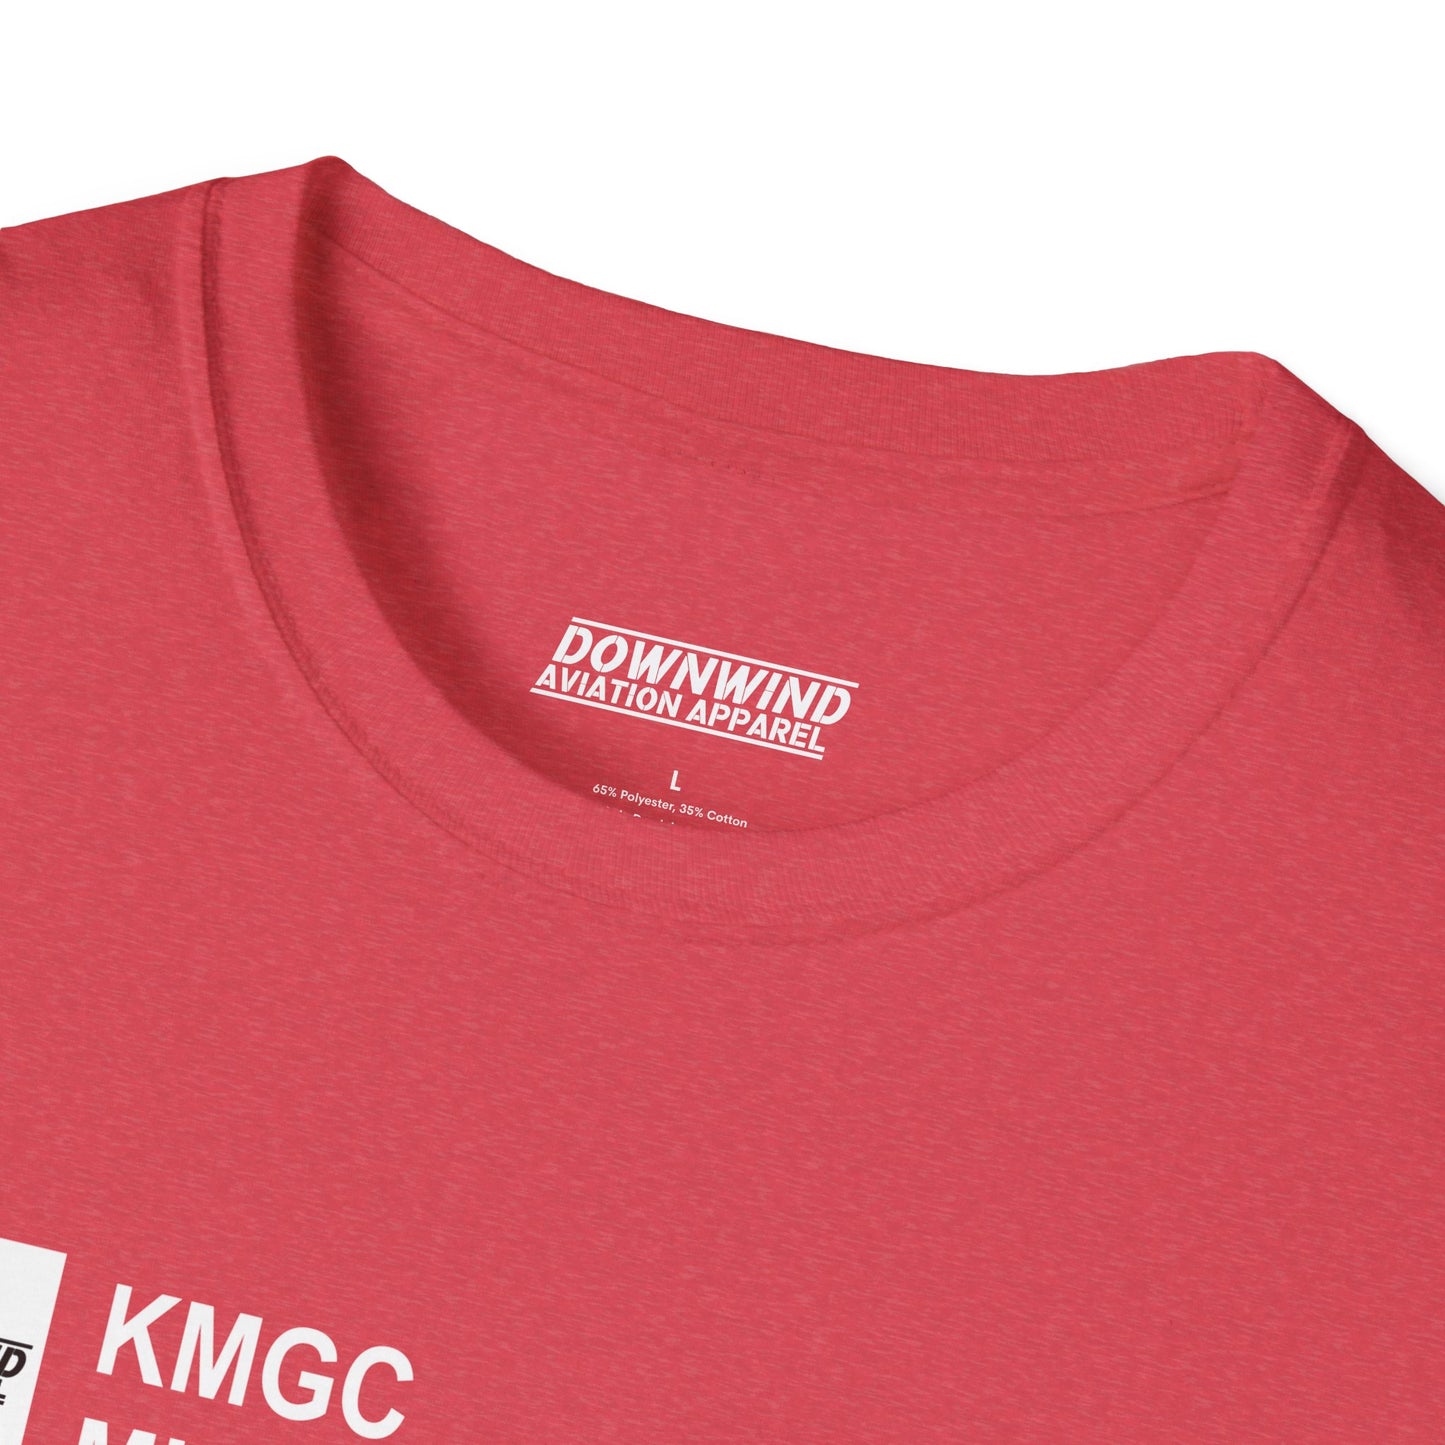 KMGC / Michigan City Muni. T-Shirt